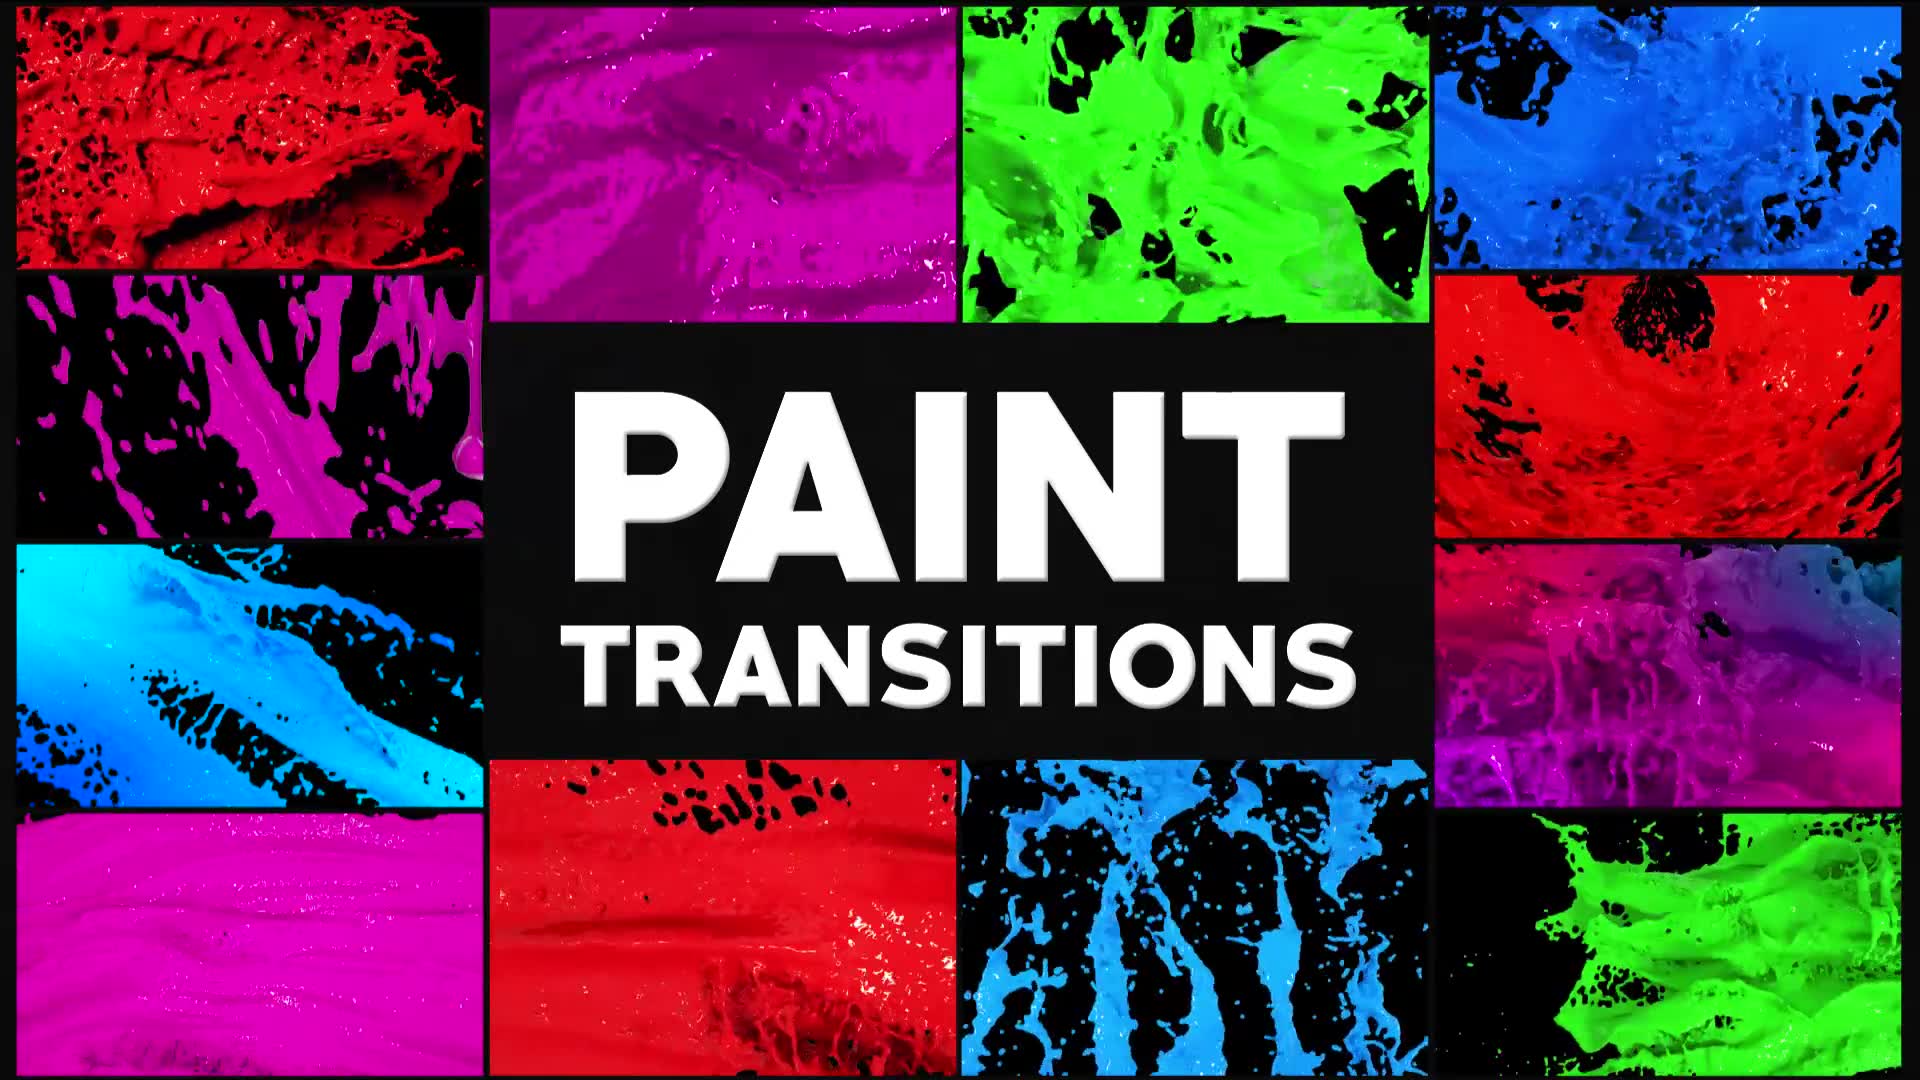 Paint Transitions | Premiere Pro MOGRT Videohive 28042675 Premiere Pro Image 2